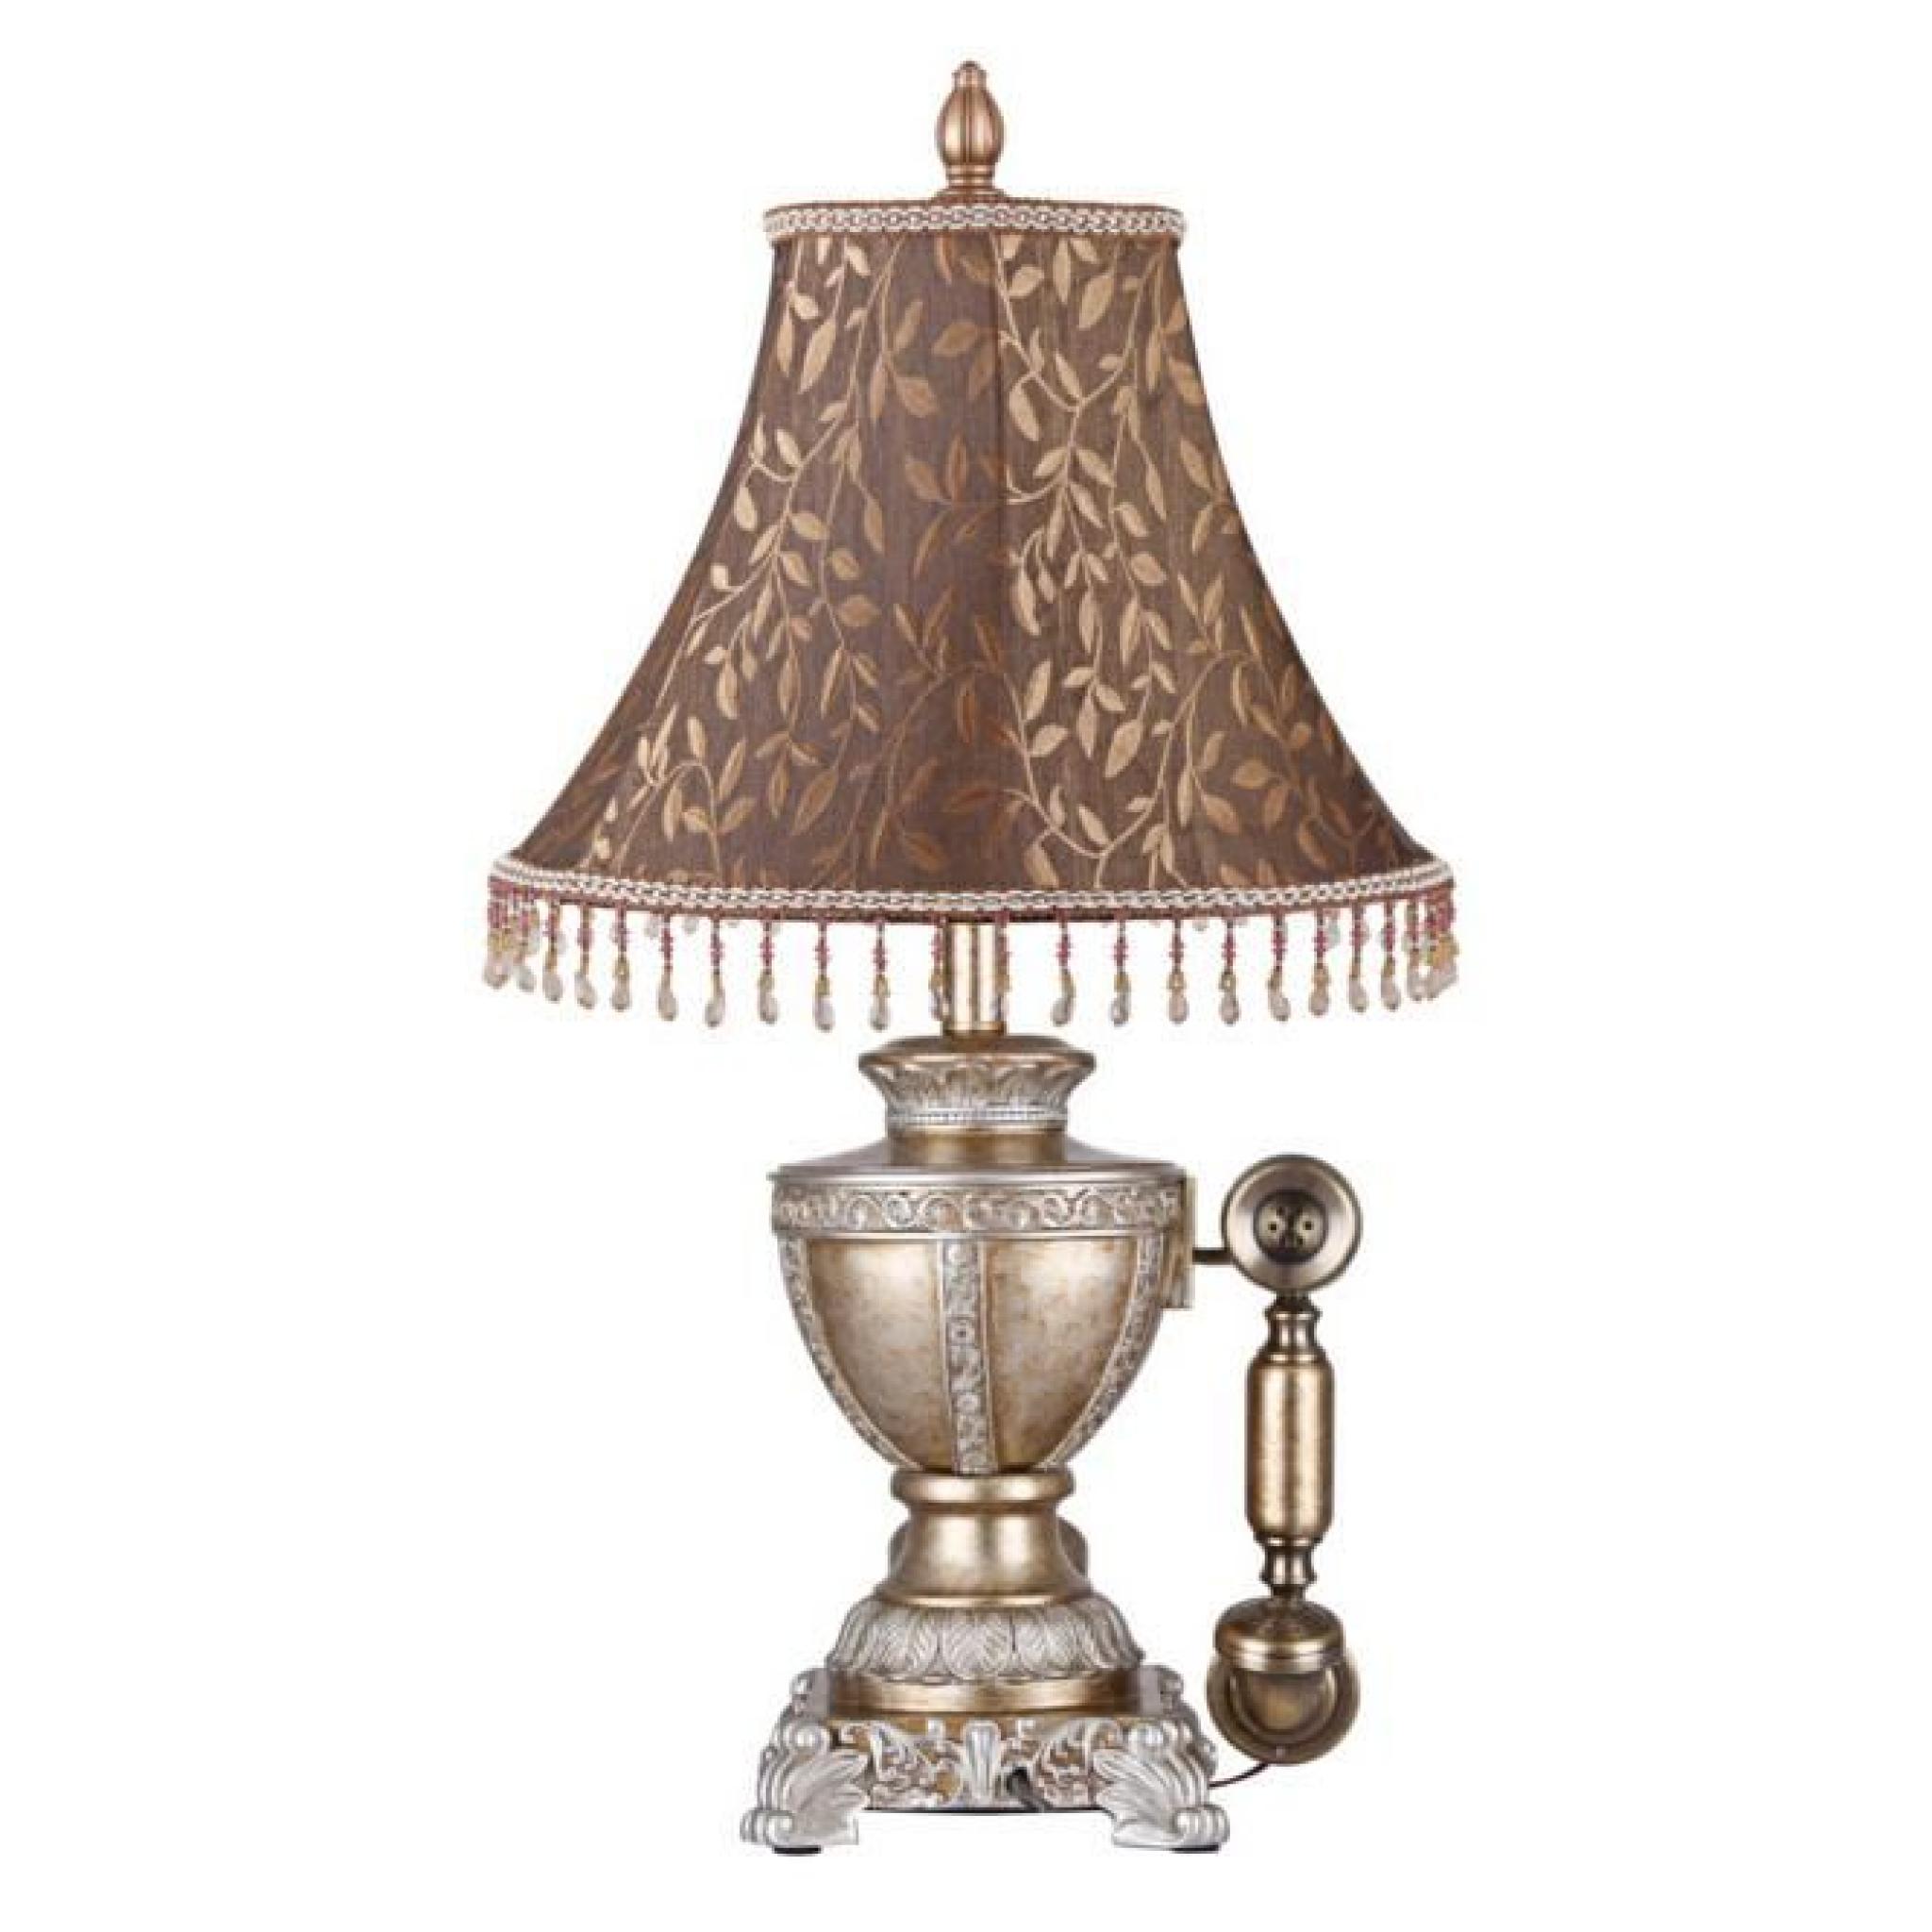 Luxueuse lampe de chevet téléphone victorien steampunk vintage chateau pas cher